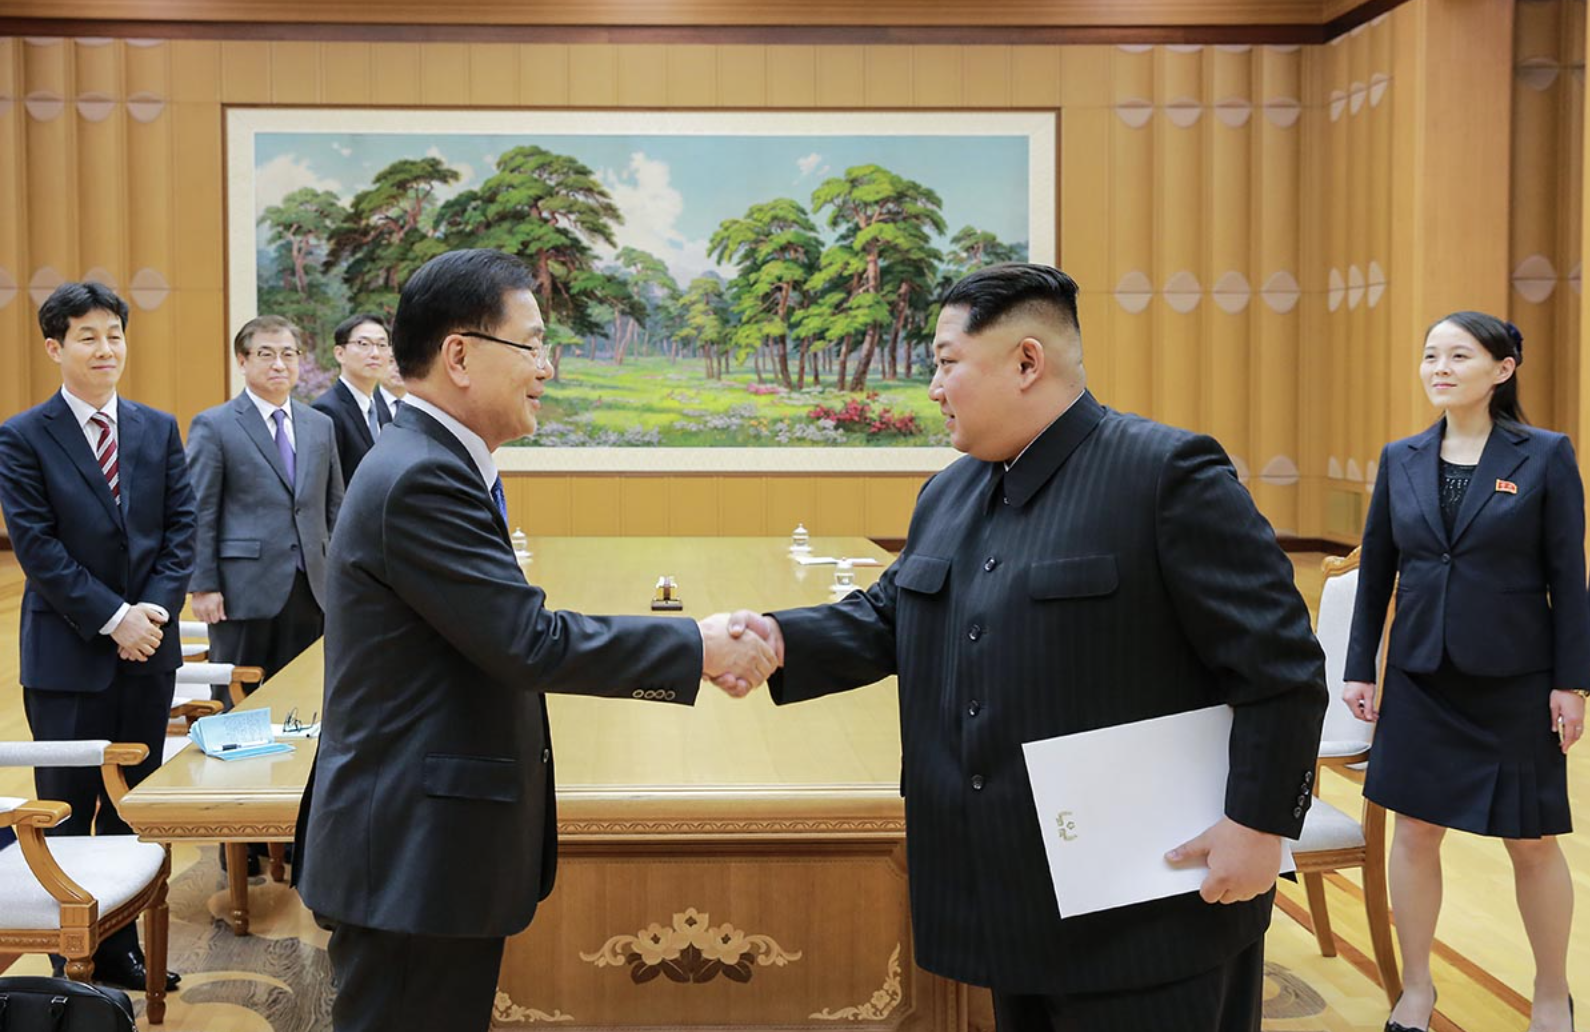 https://commons.wikimedia.org/wiki/File%3AChung_Eui-yong_and_Kim_Jong-un.jpg